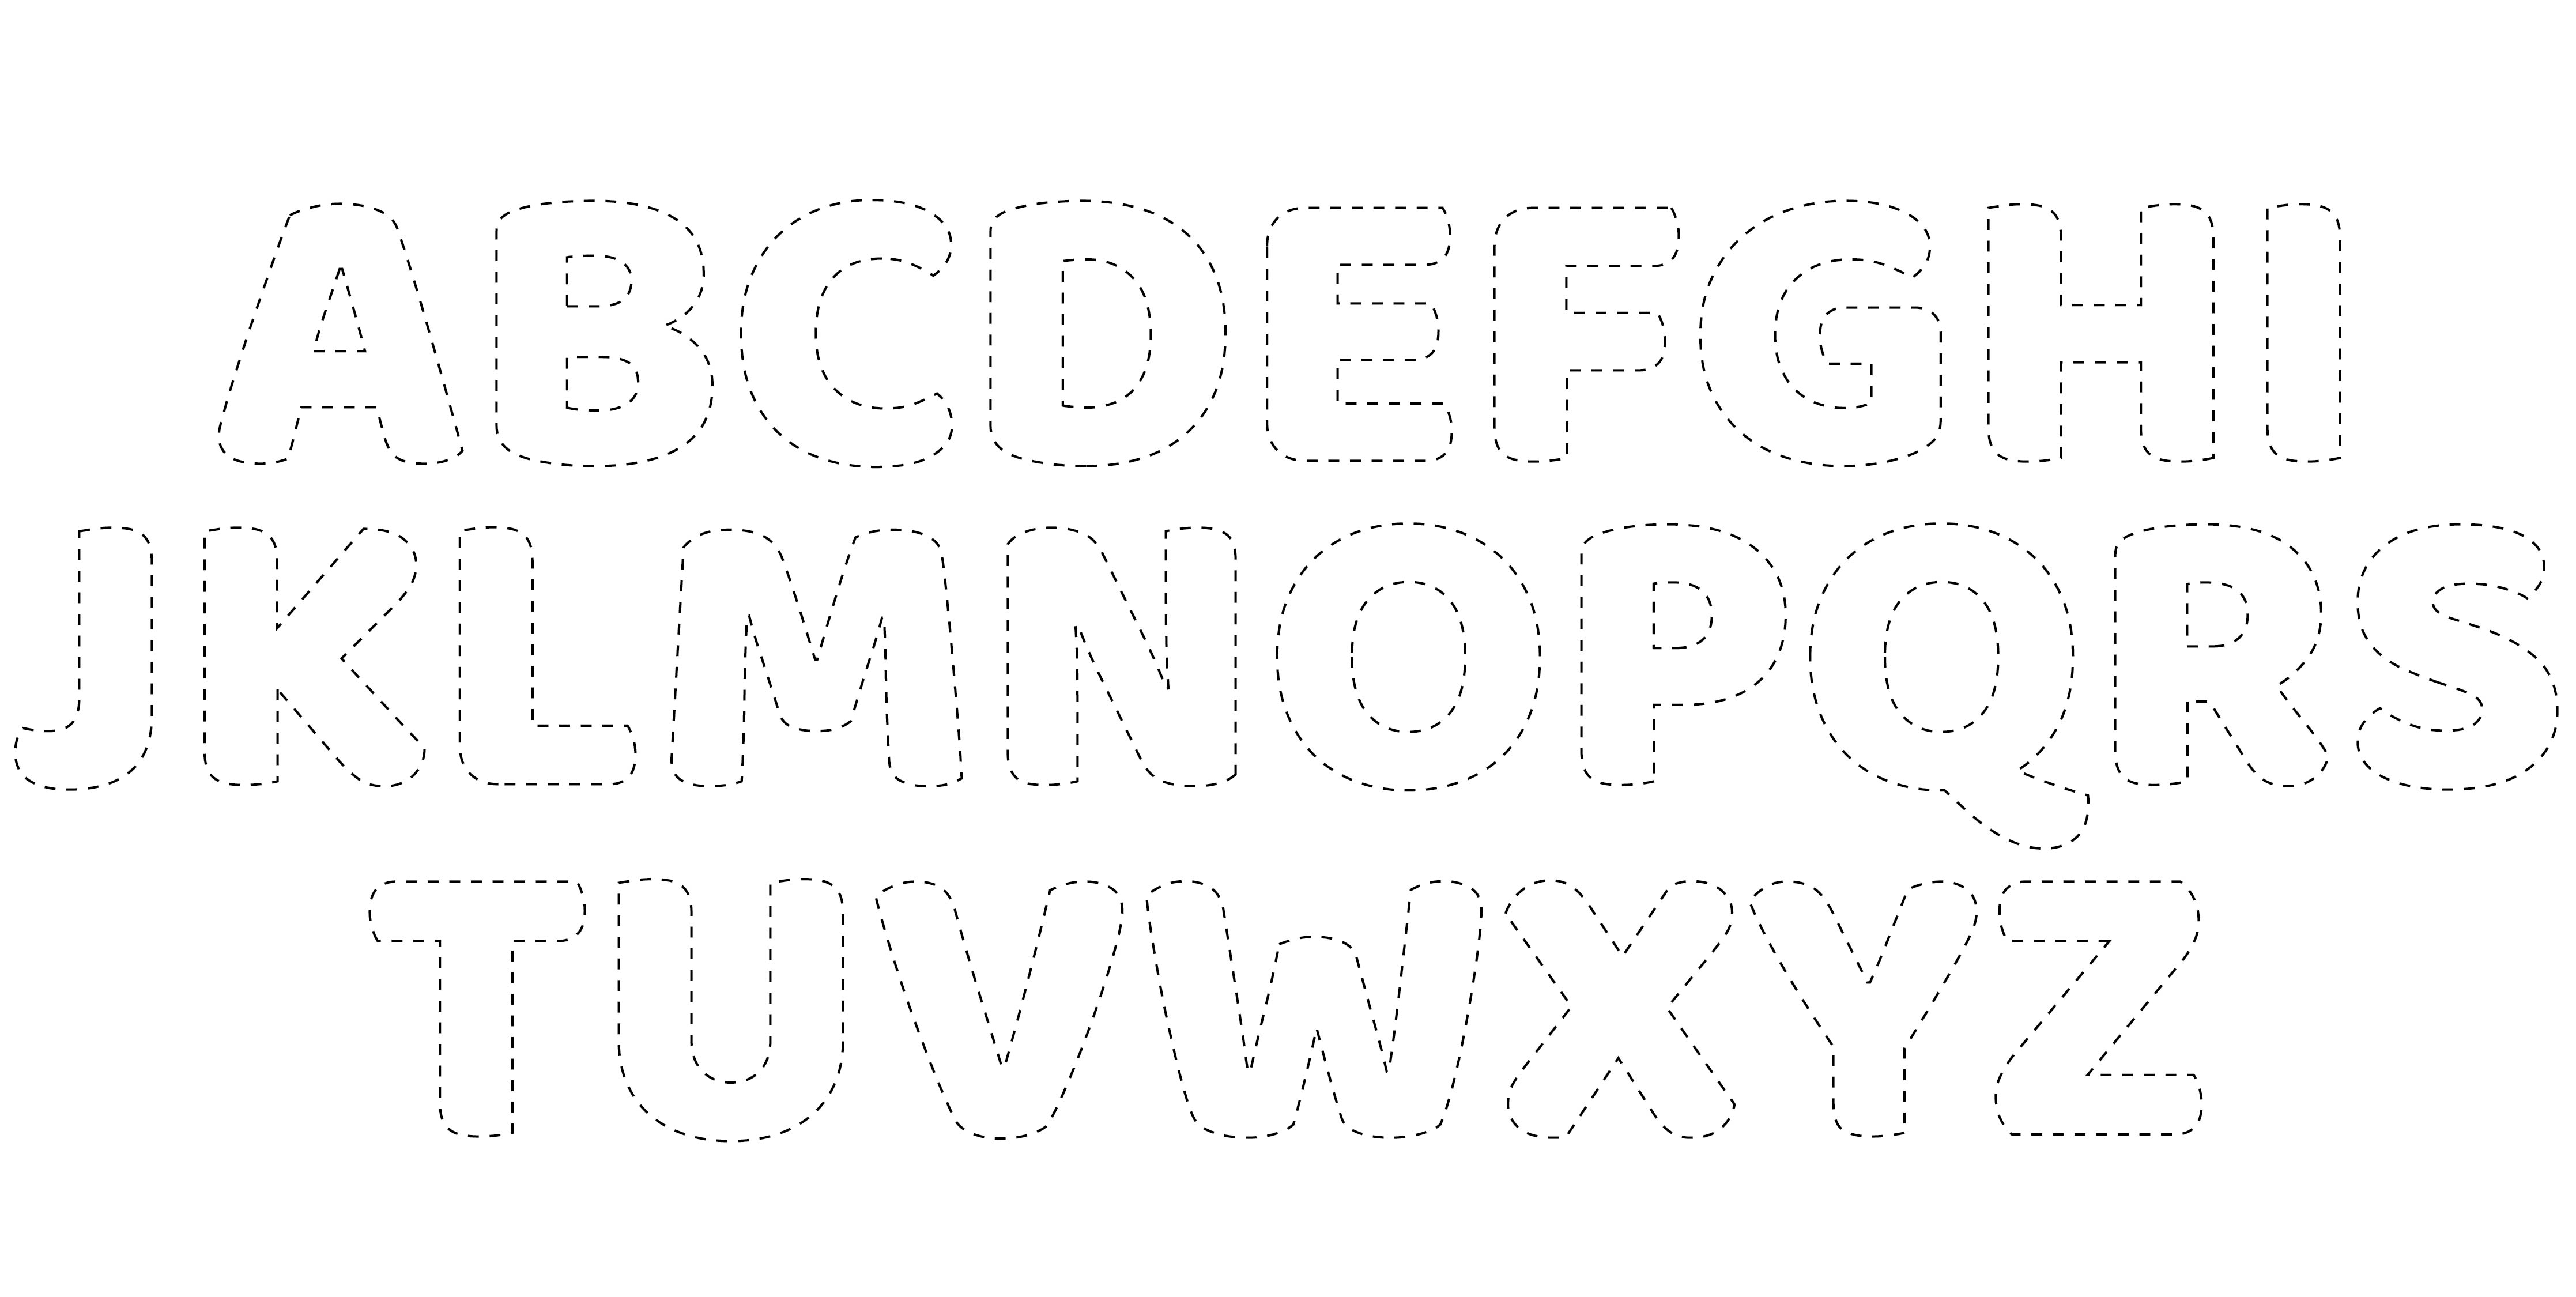 Printable Cut Out Alphabet Letters